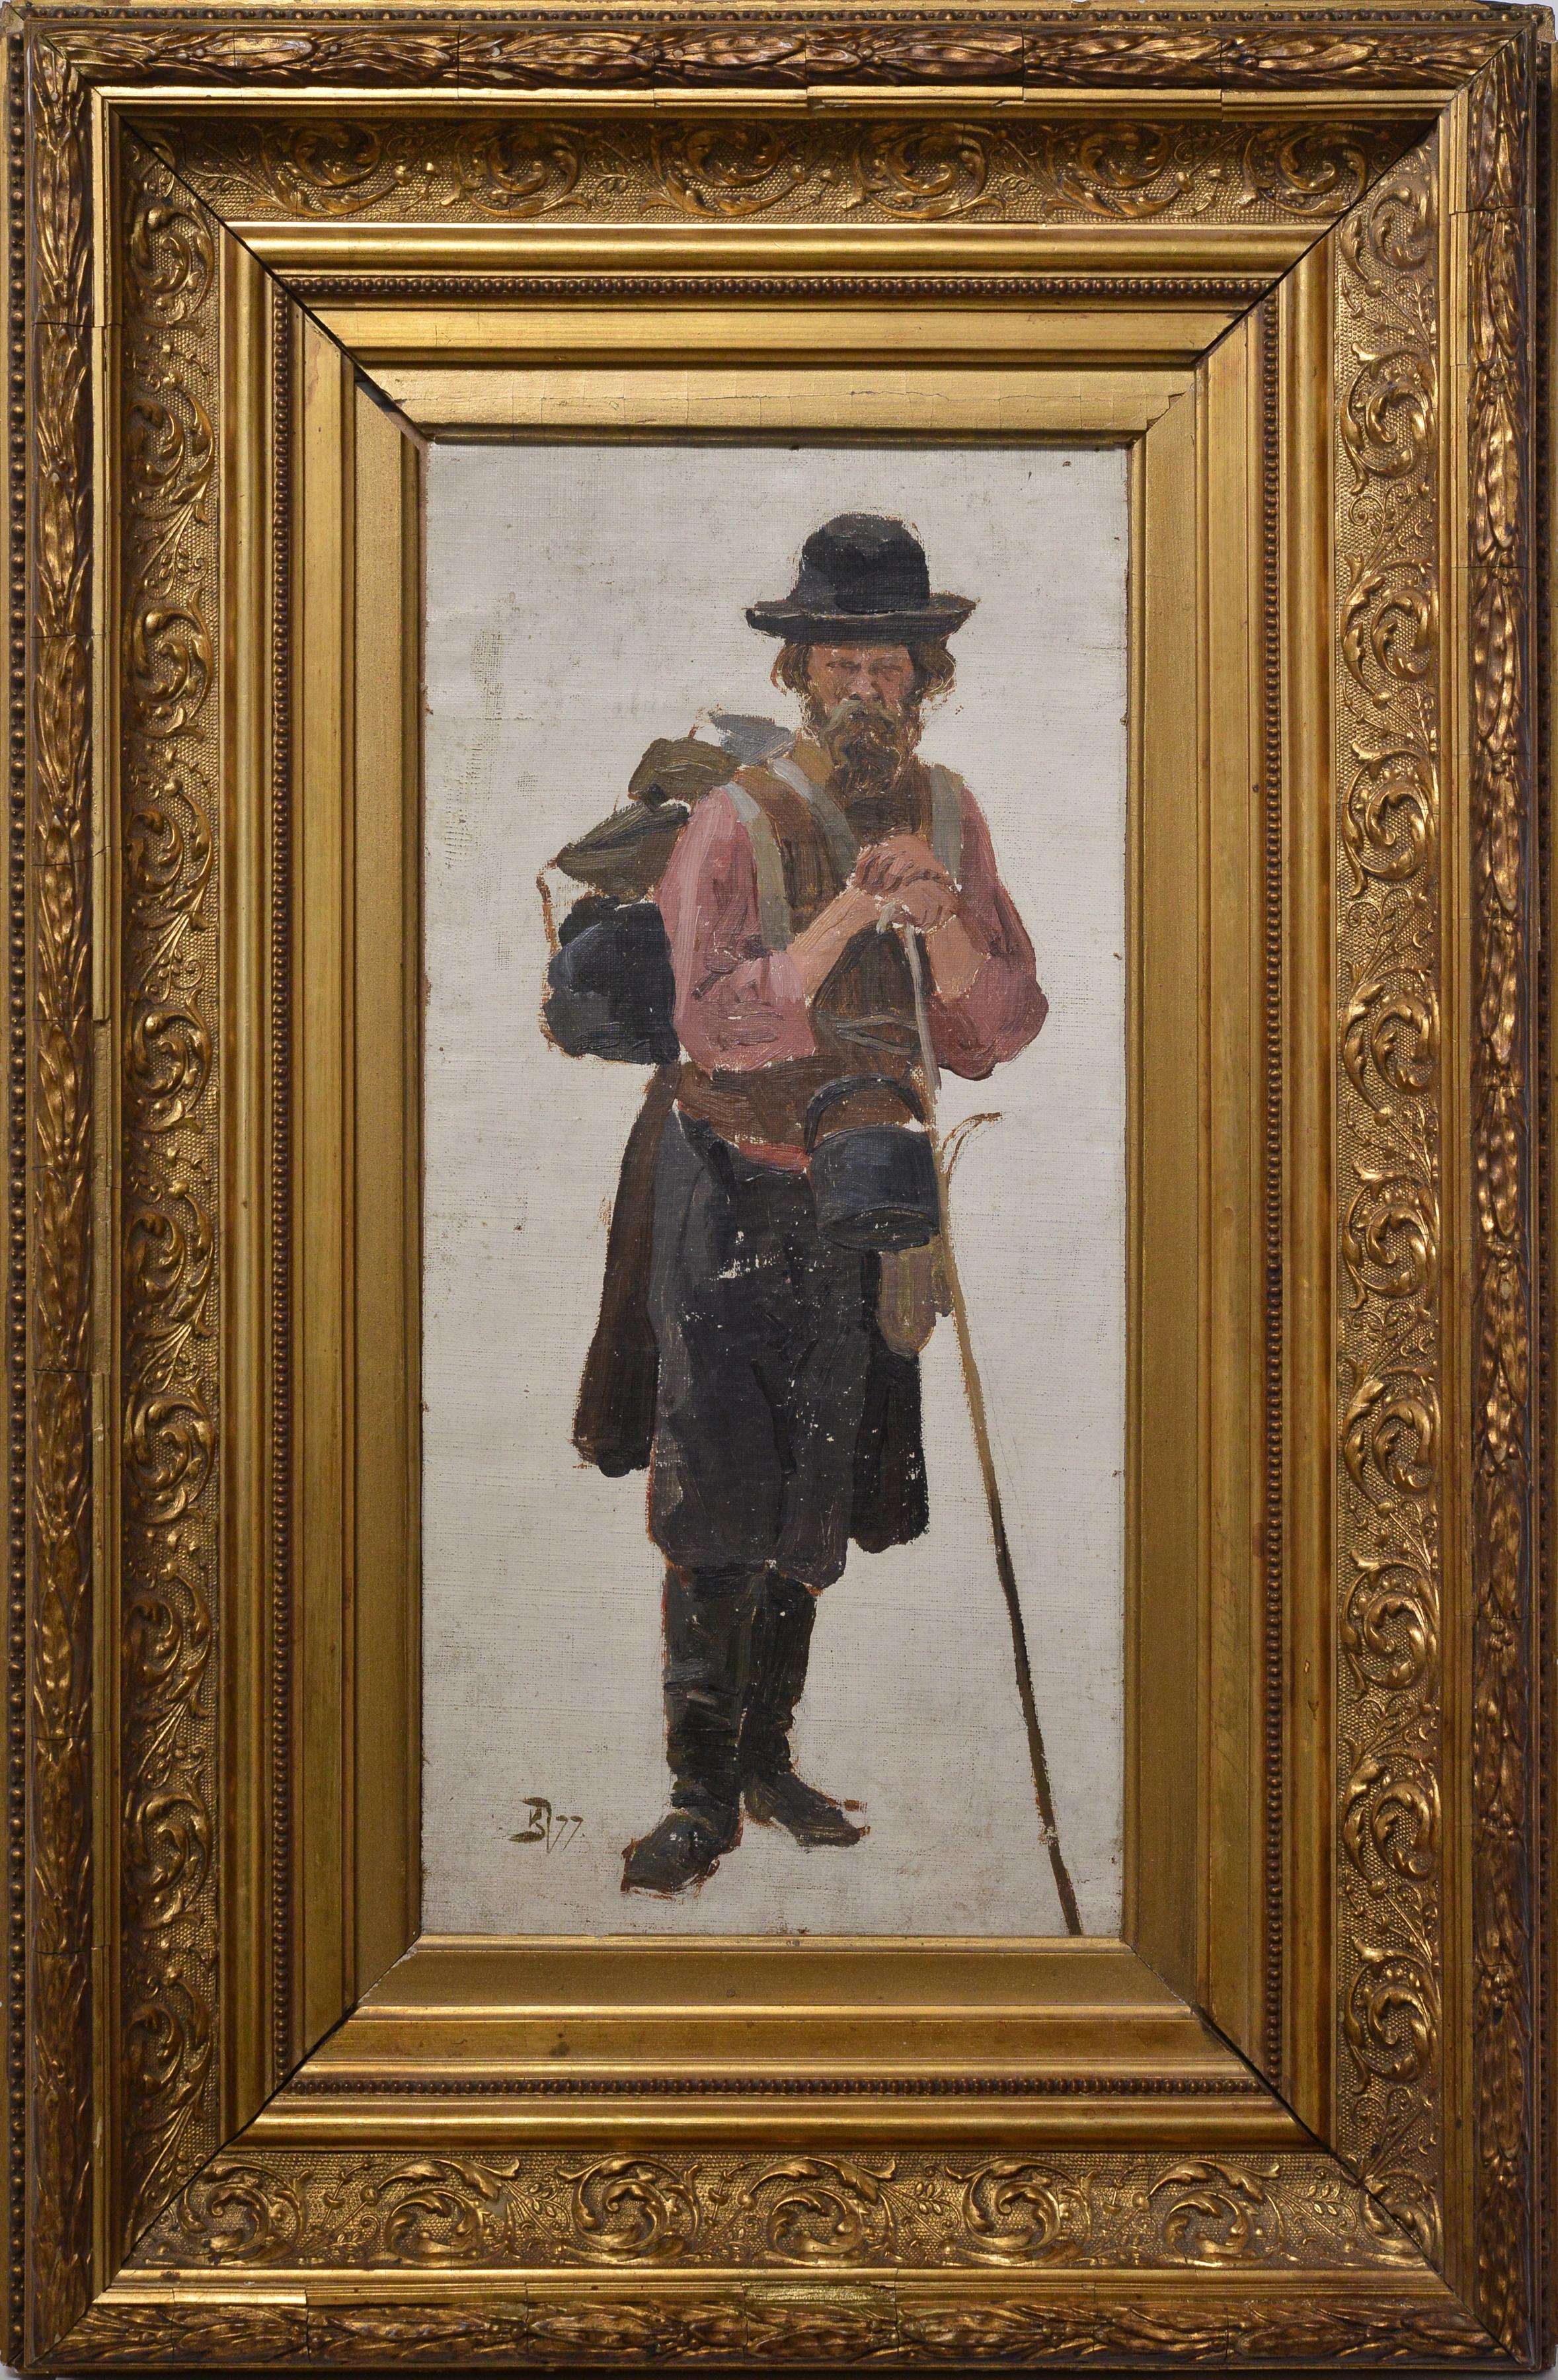 Vasily Dmitrievich Polenov Figurative Painting – Russisches Reisemann, Genreporträt des 19. Jahrhunderts, Ölgemälde, signiert, gerahmt